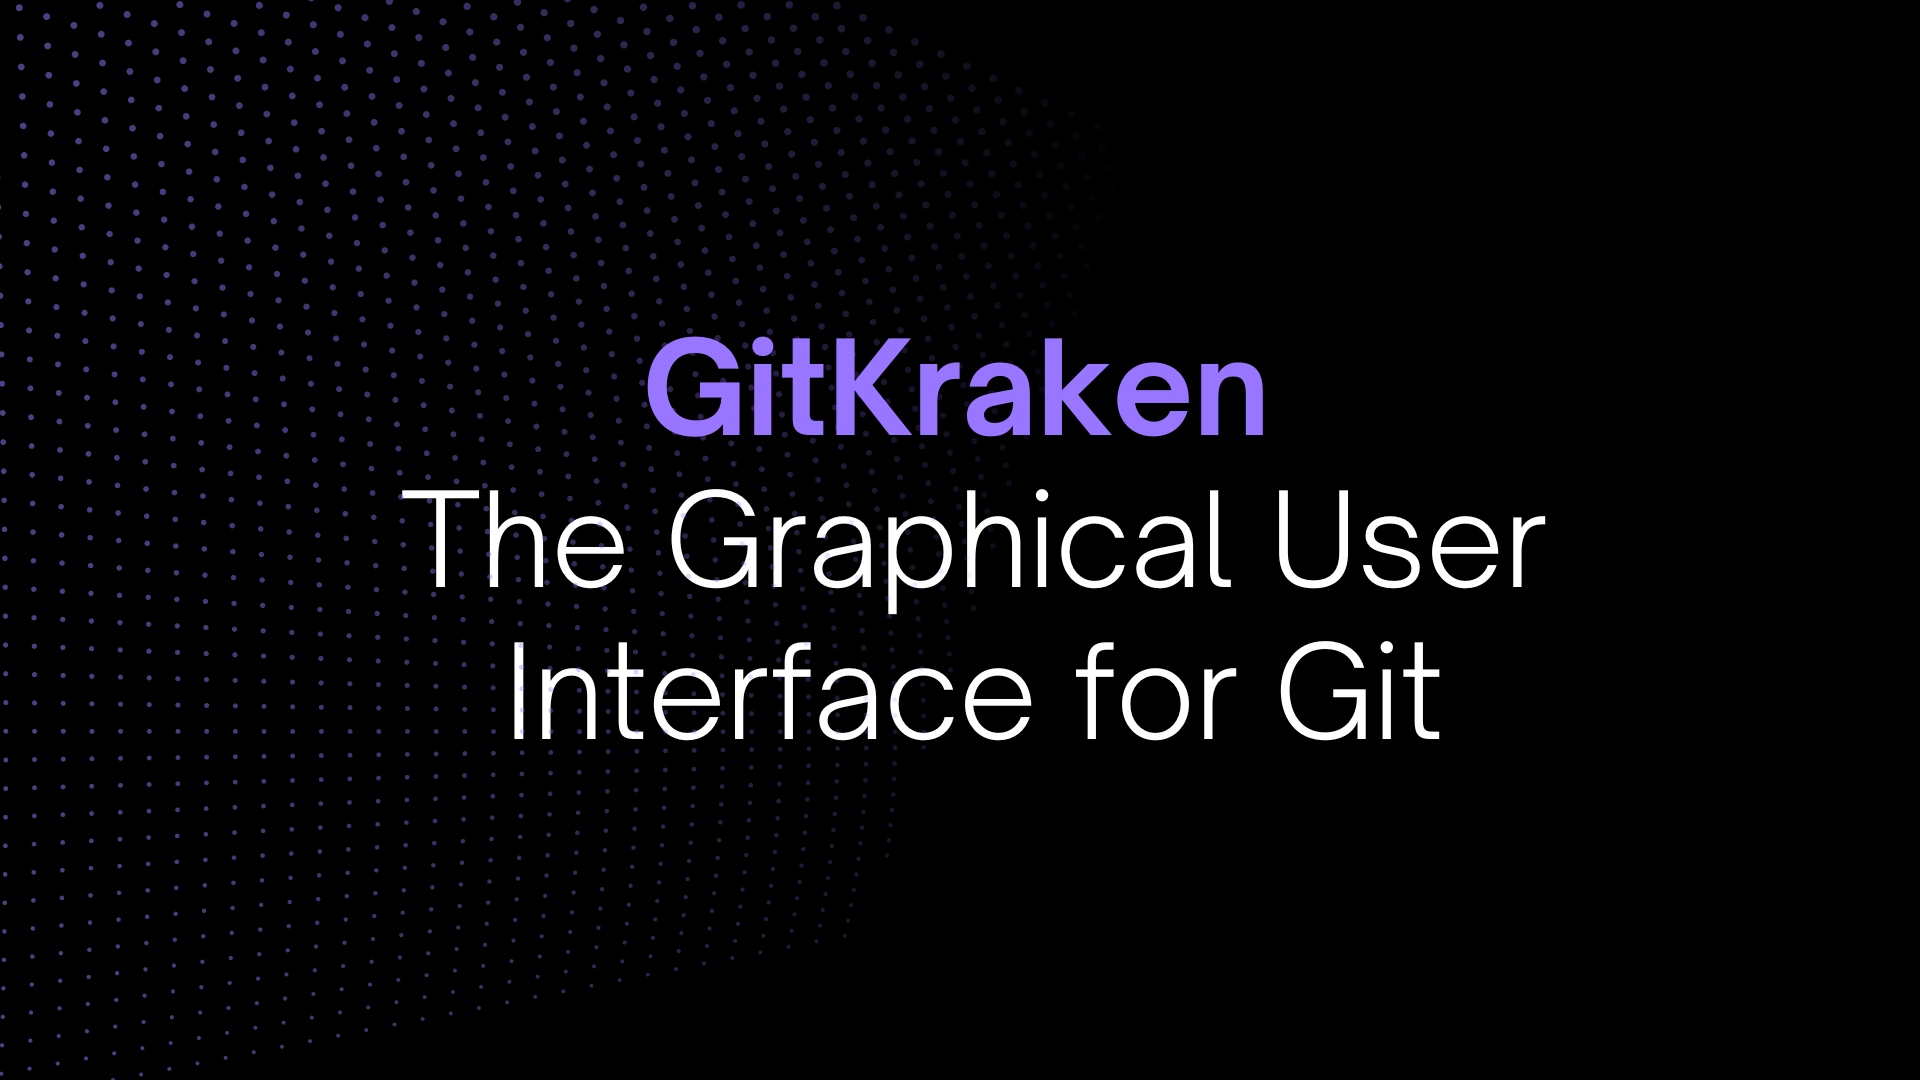 GitKraken: The Graphical User Interface for Git